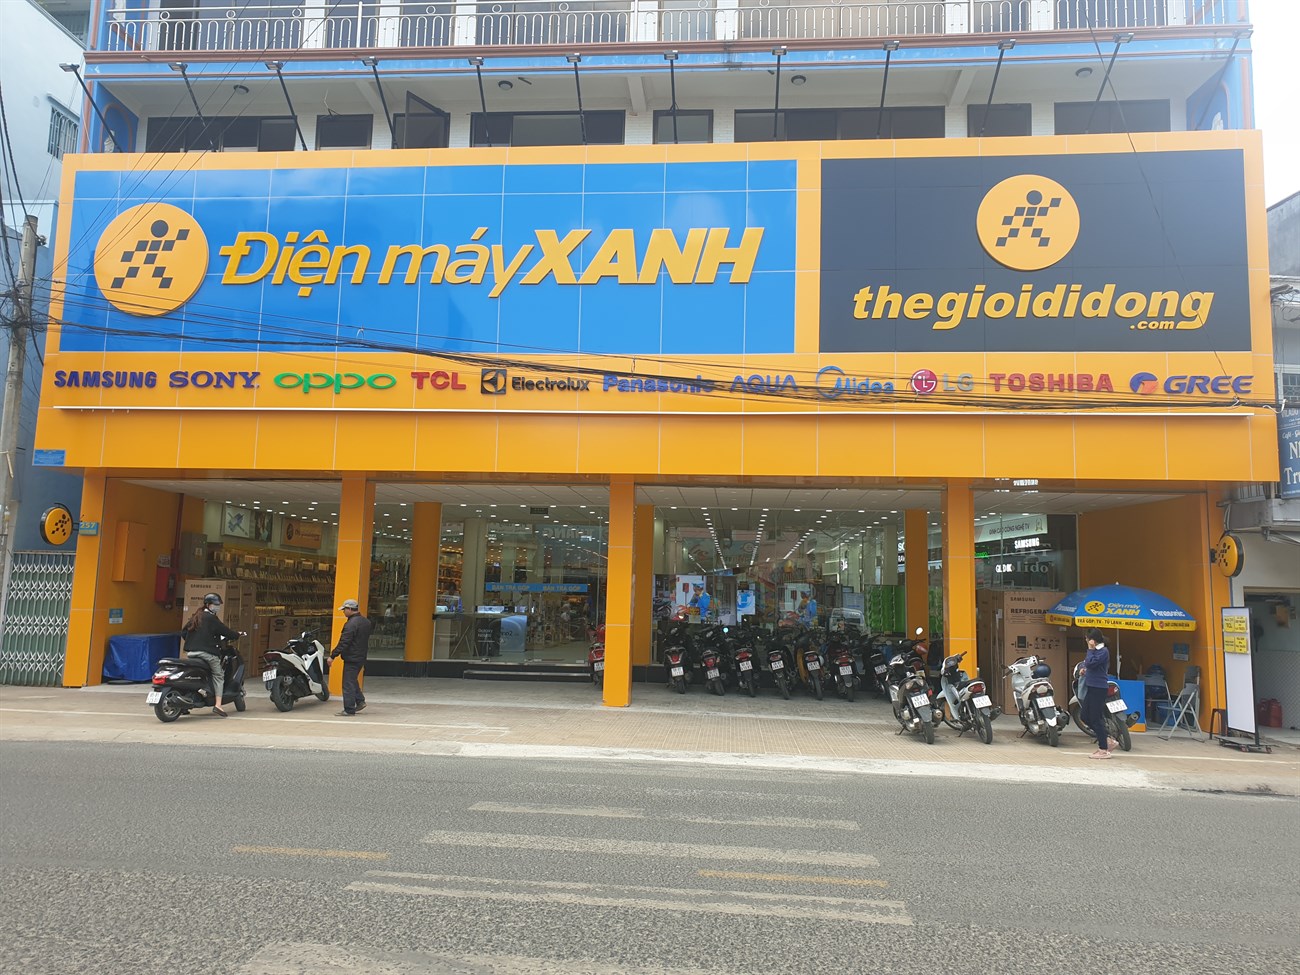 Điện máy XANH 257 Phan Đình Phùng tại TP. Đà Lạt , Lâm Đồng thông tin địa chỉ, số điện thoại